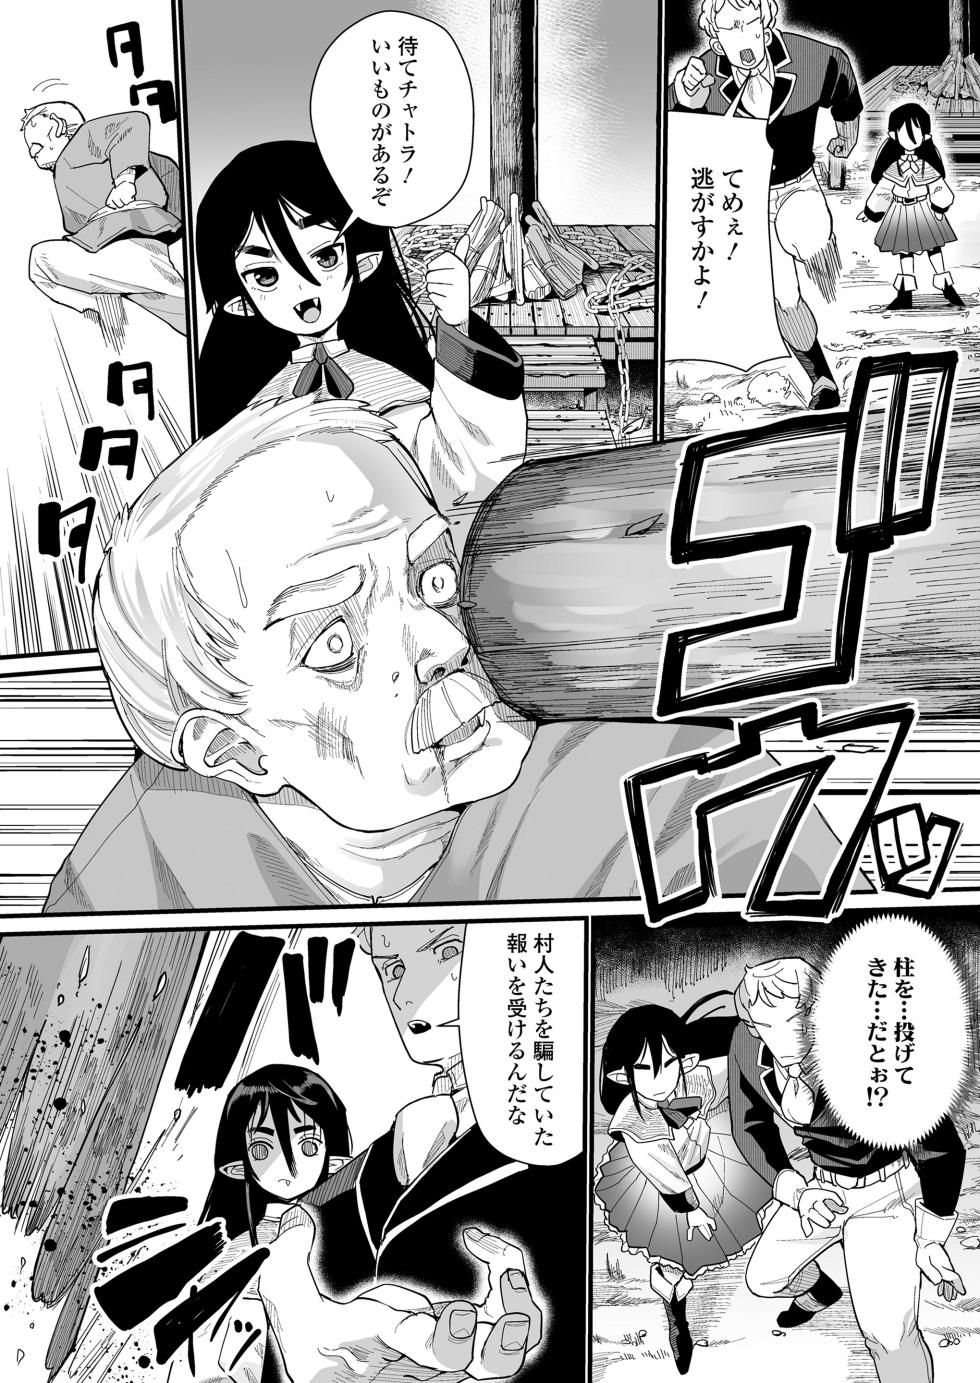 Towako 15 [Digital] - Page 40